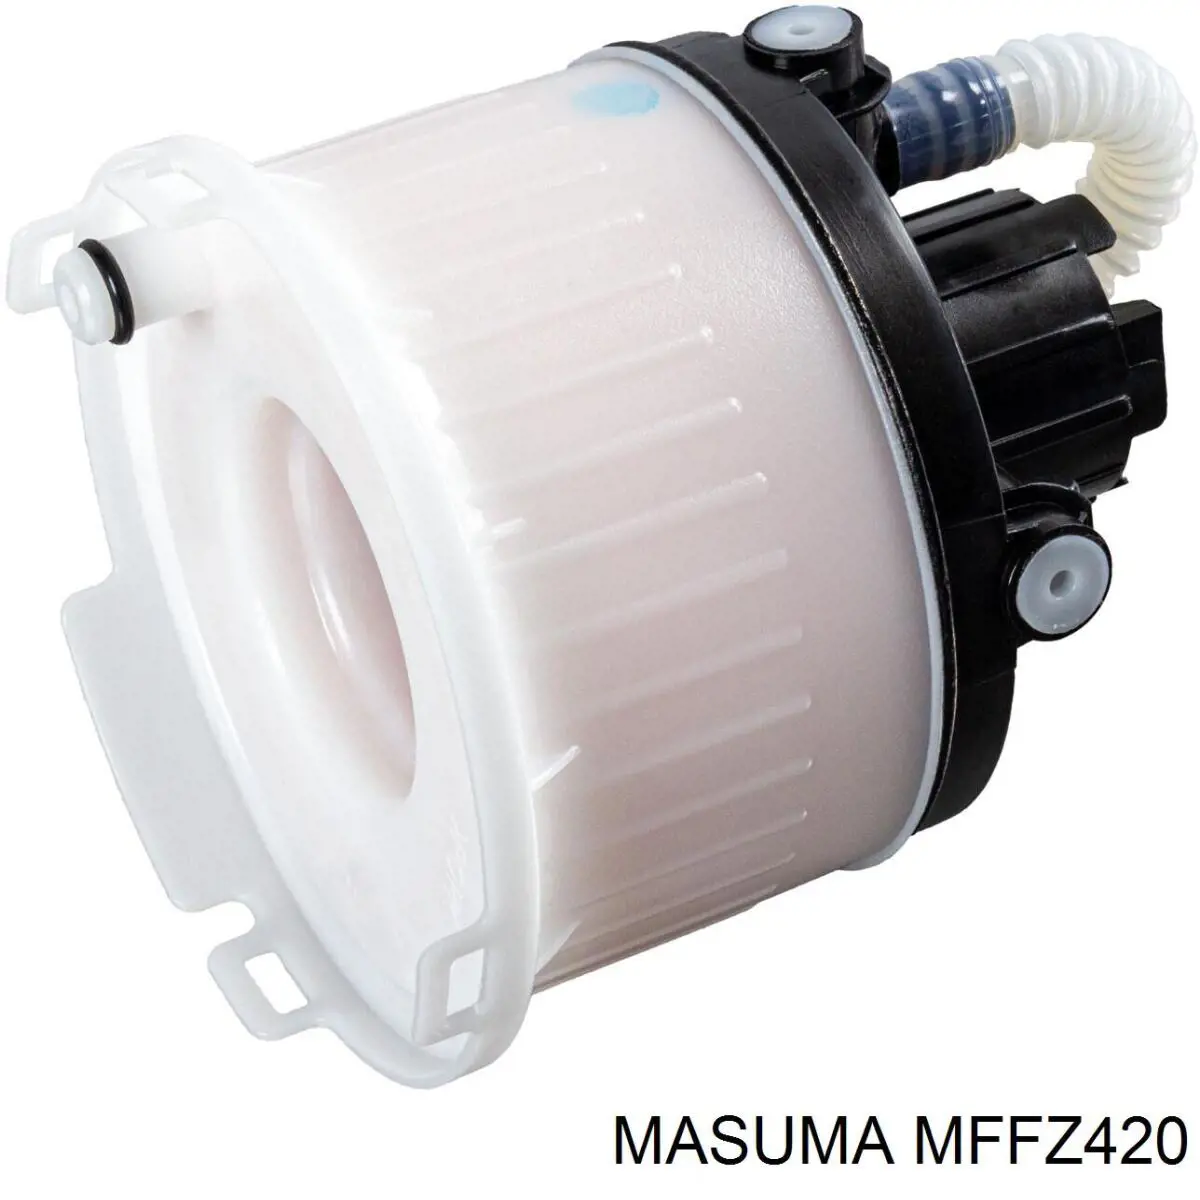 mffz420 Masuma топливный фильтр